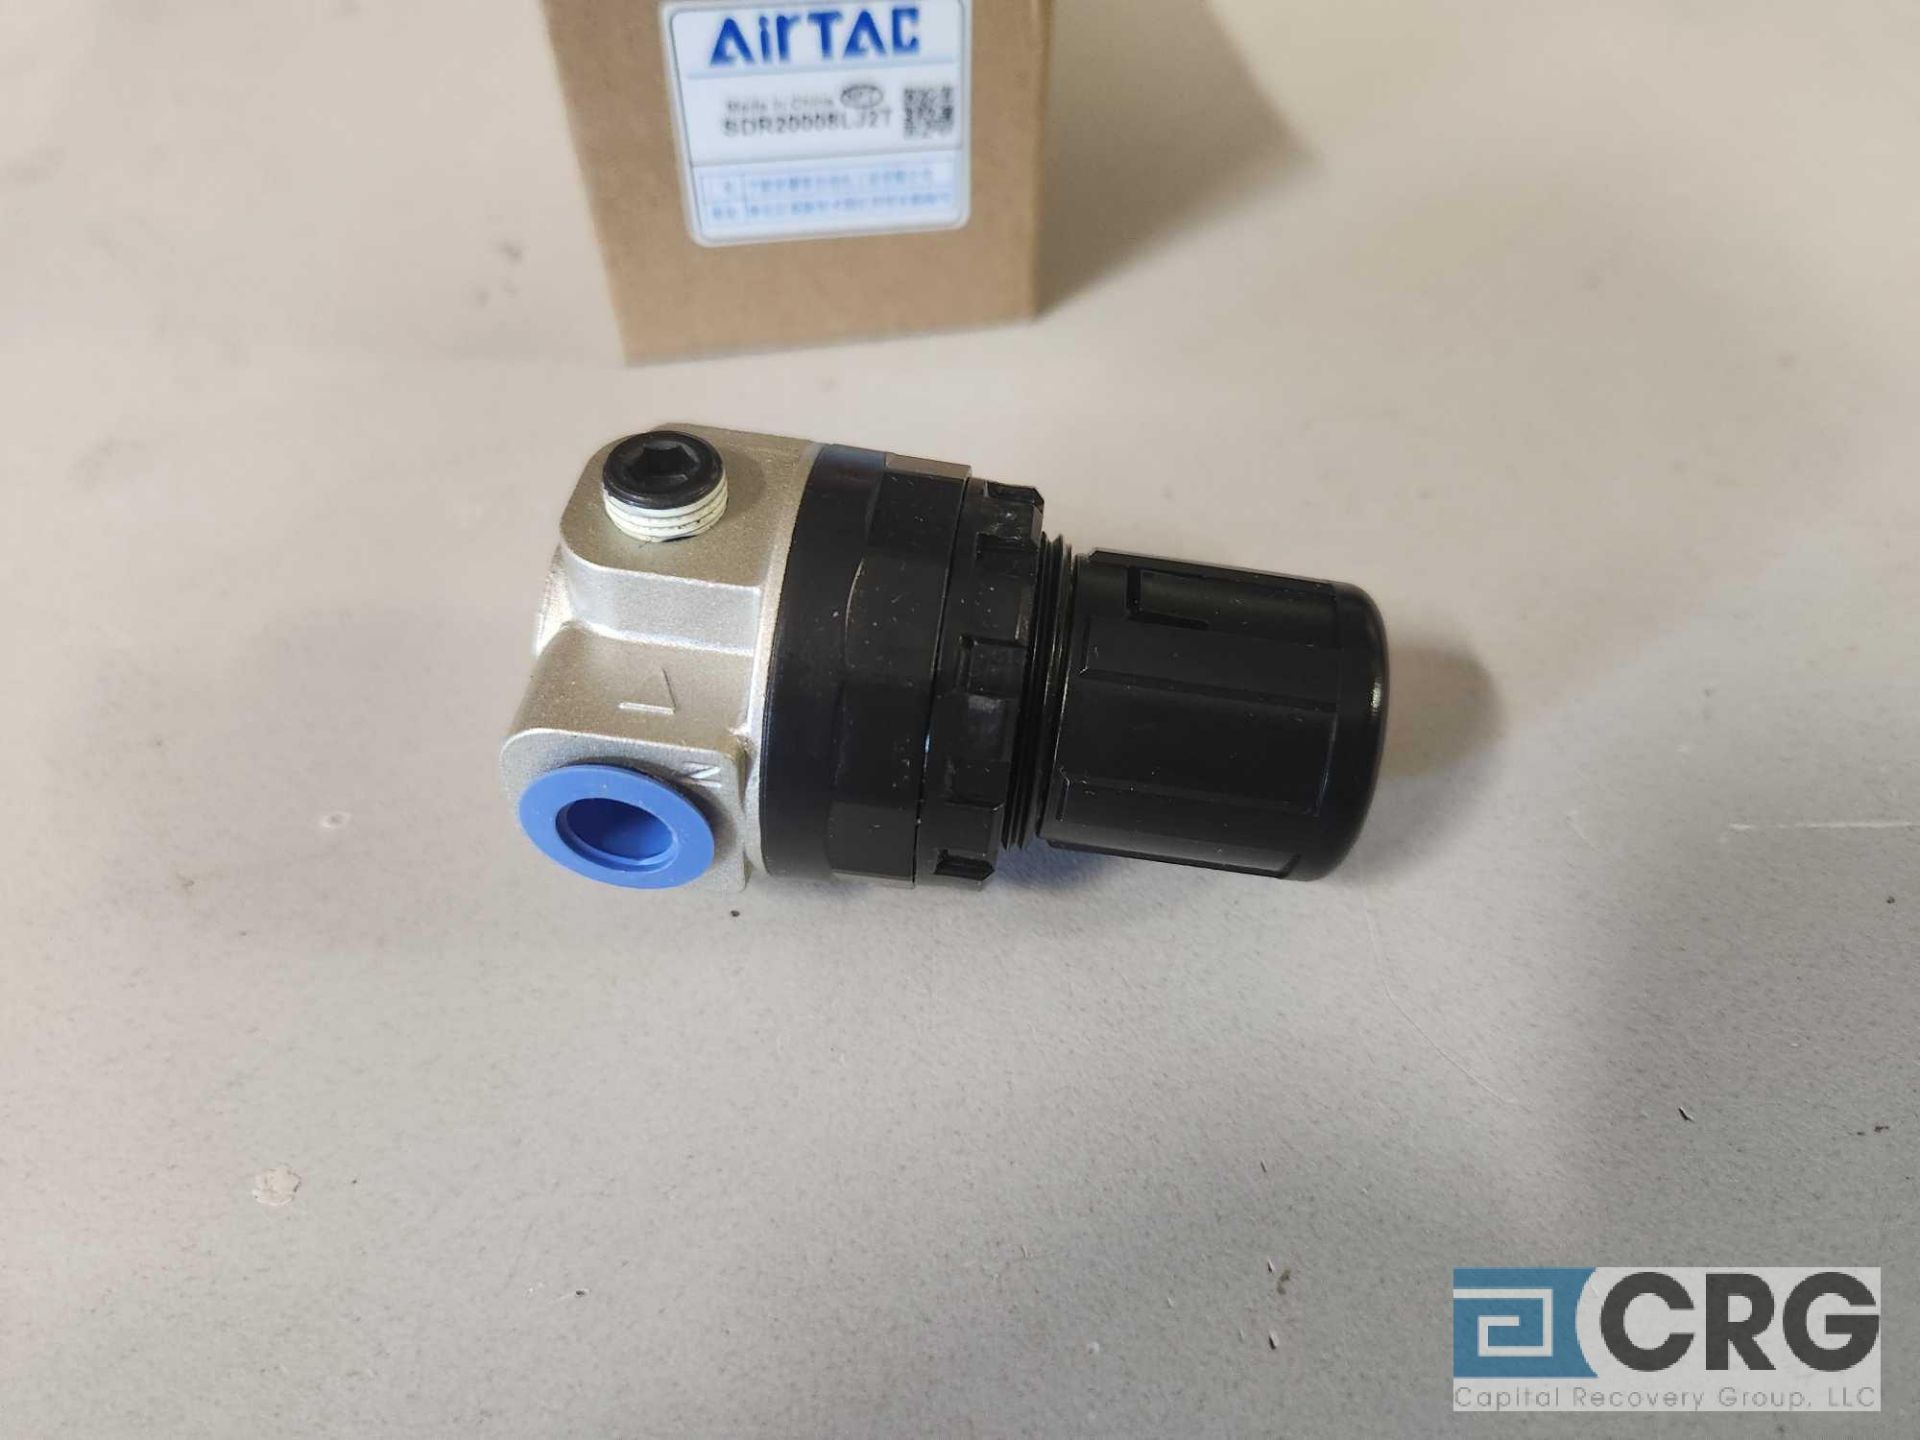 Air Tac psi pressure regulators - Image 3 of 4